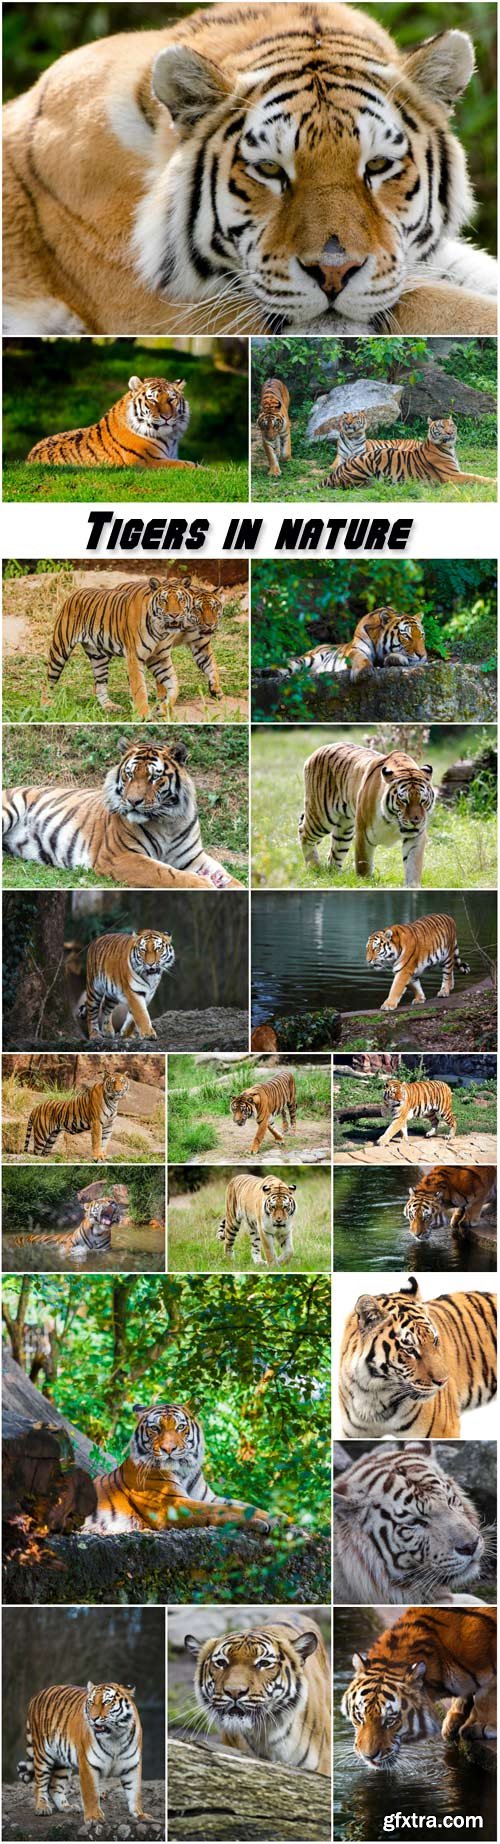 Tigers in nature, predators